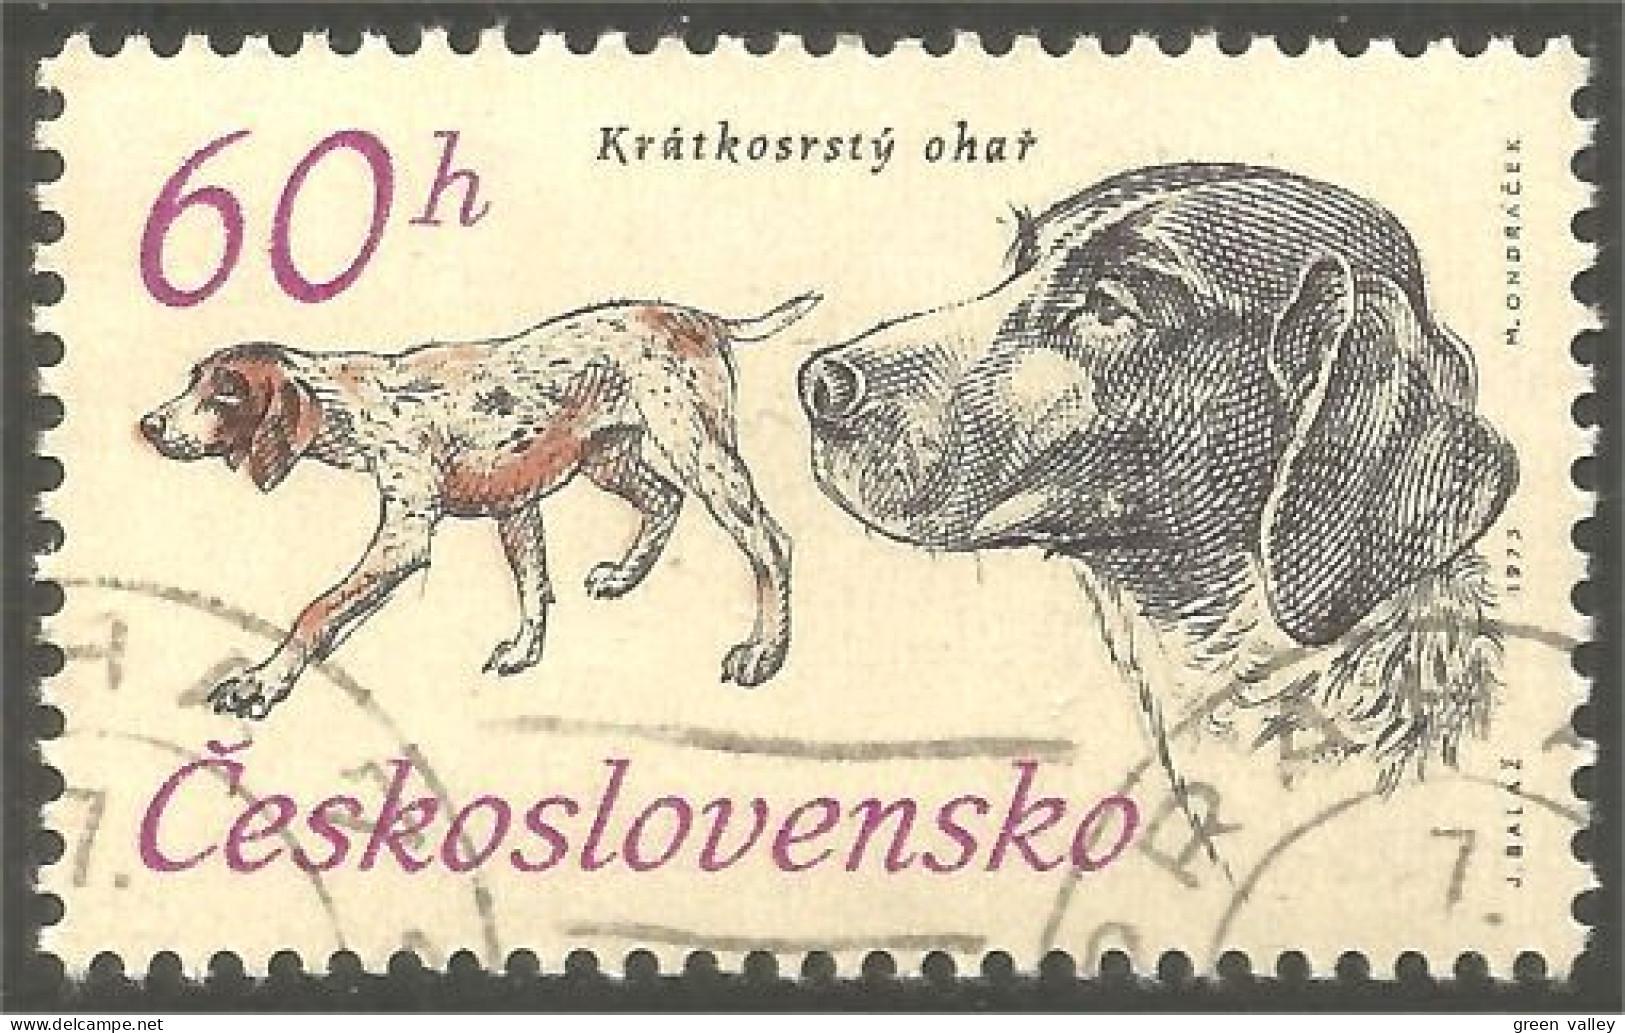 DG-7 Ceskoslovenko Pointer Chien Dog Hund Cane Hond Perro - Chiens